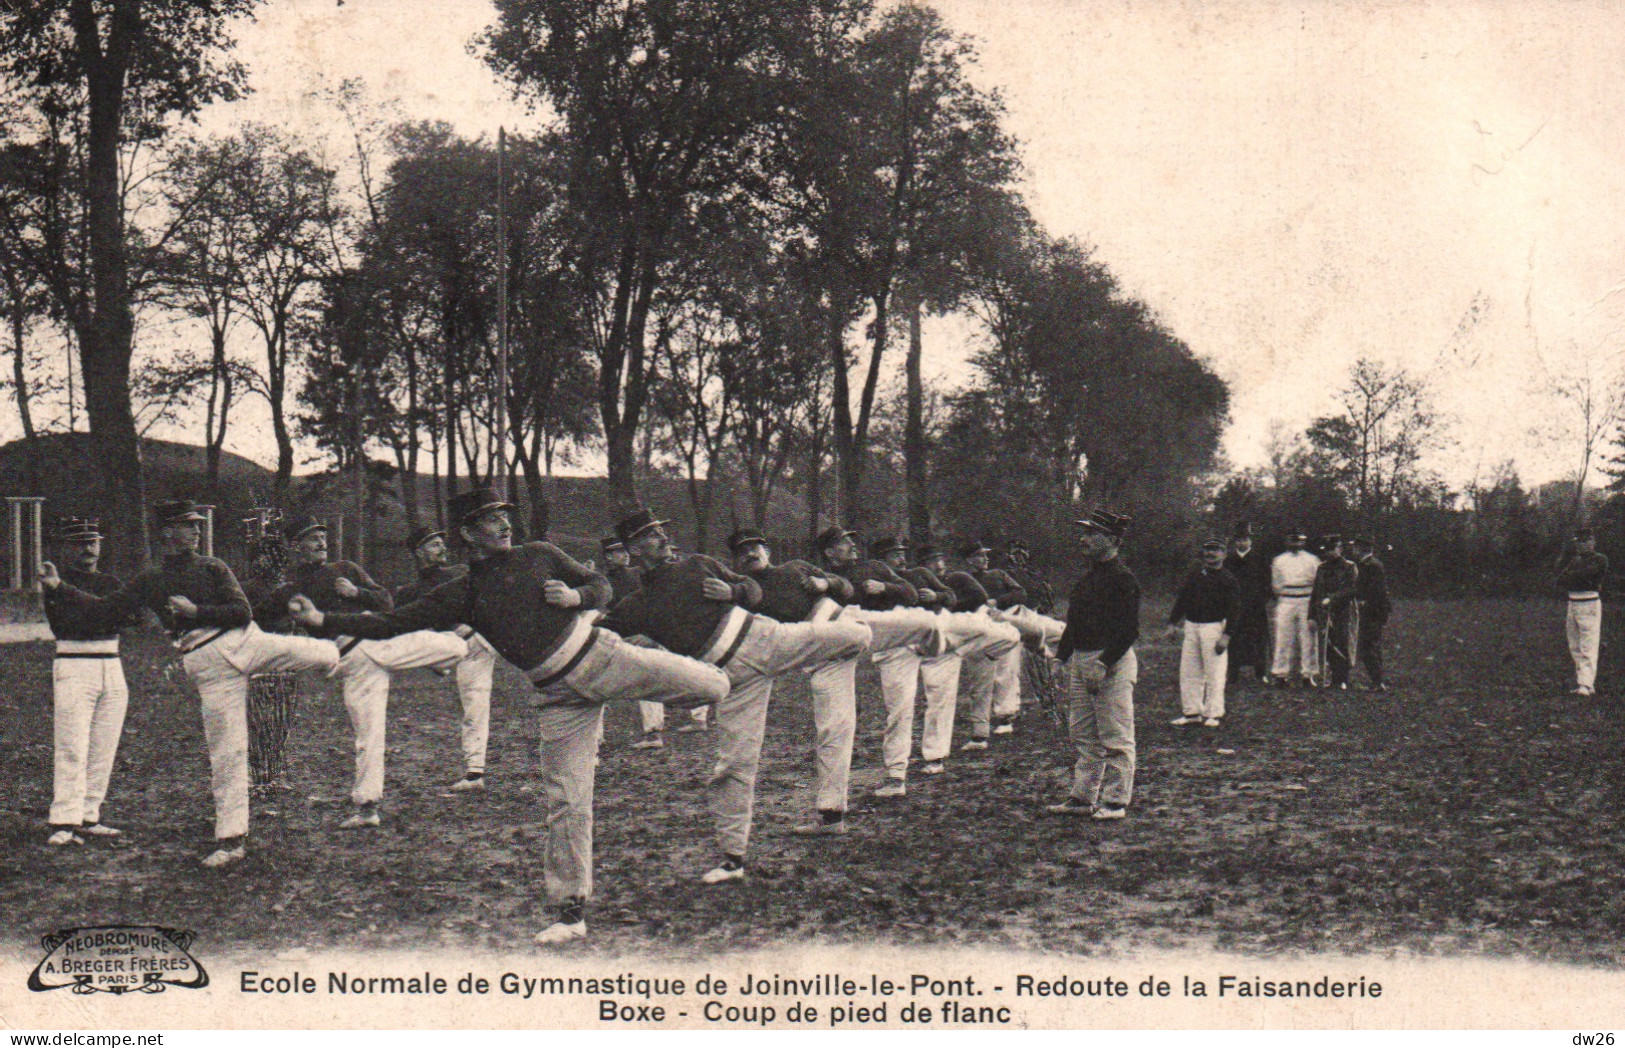 Ecole Normale De Gymnastique Joinville-le-Pont, Redoute De La Faisanderie, Boxe Française: Coup De Pied De Flan - Pugilato